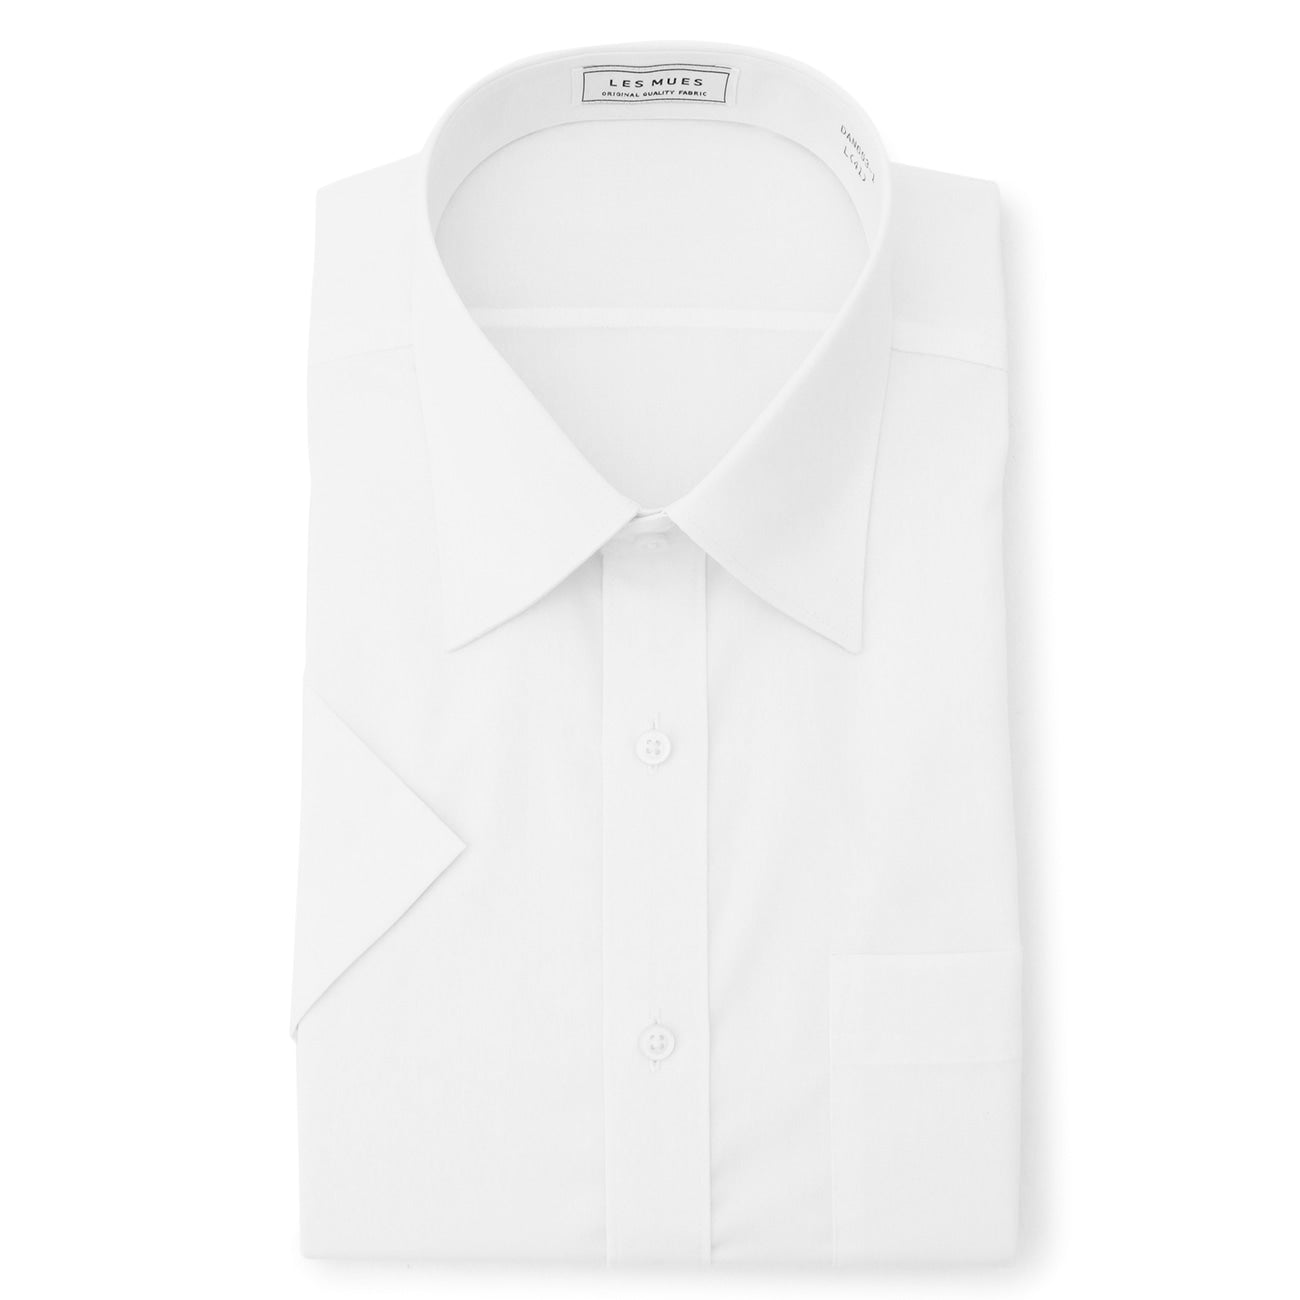 Aircool 免燙標準領短袖襯衫